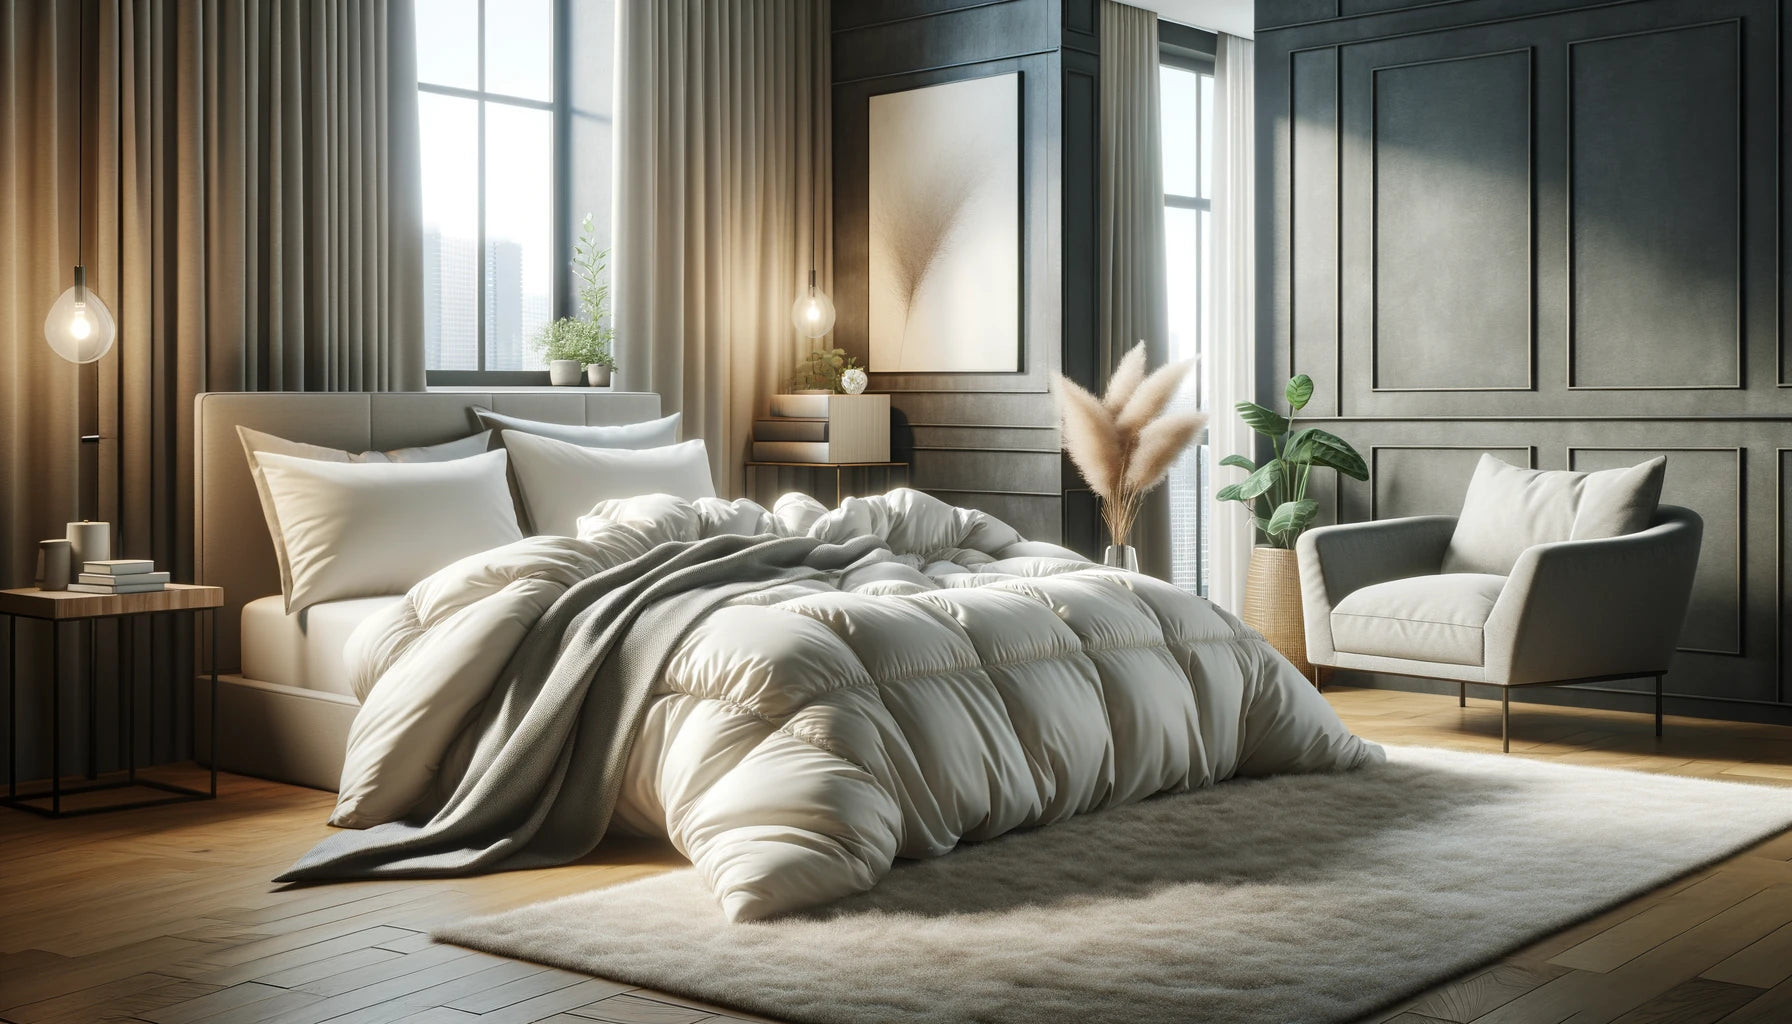 Duvet vs Blanket: Choosing the Right Bedding for Your Needs